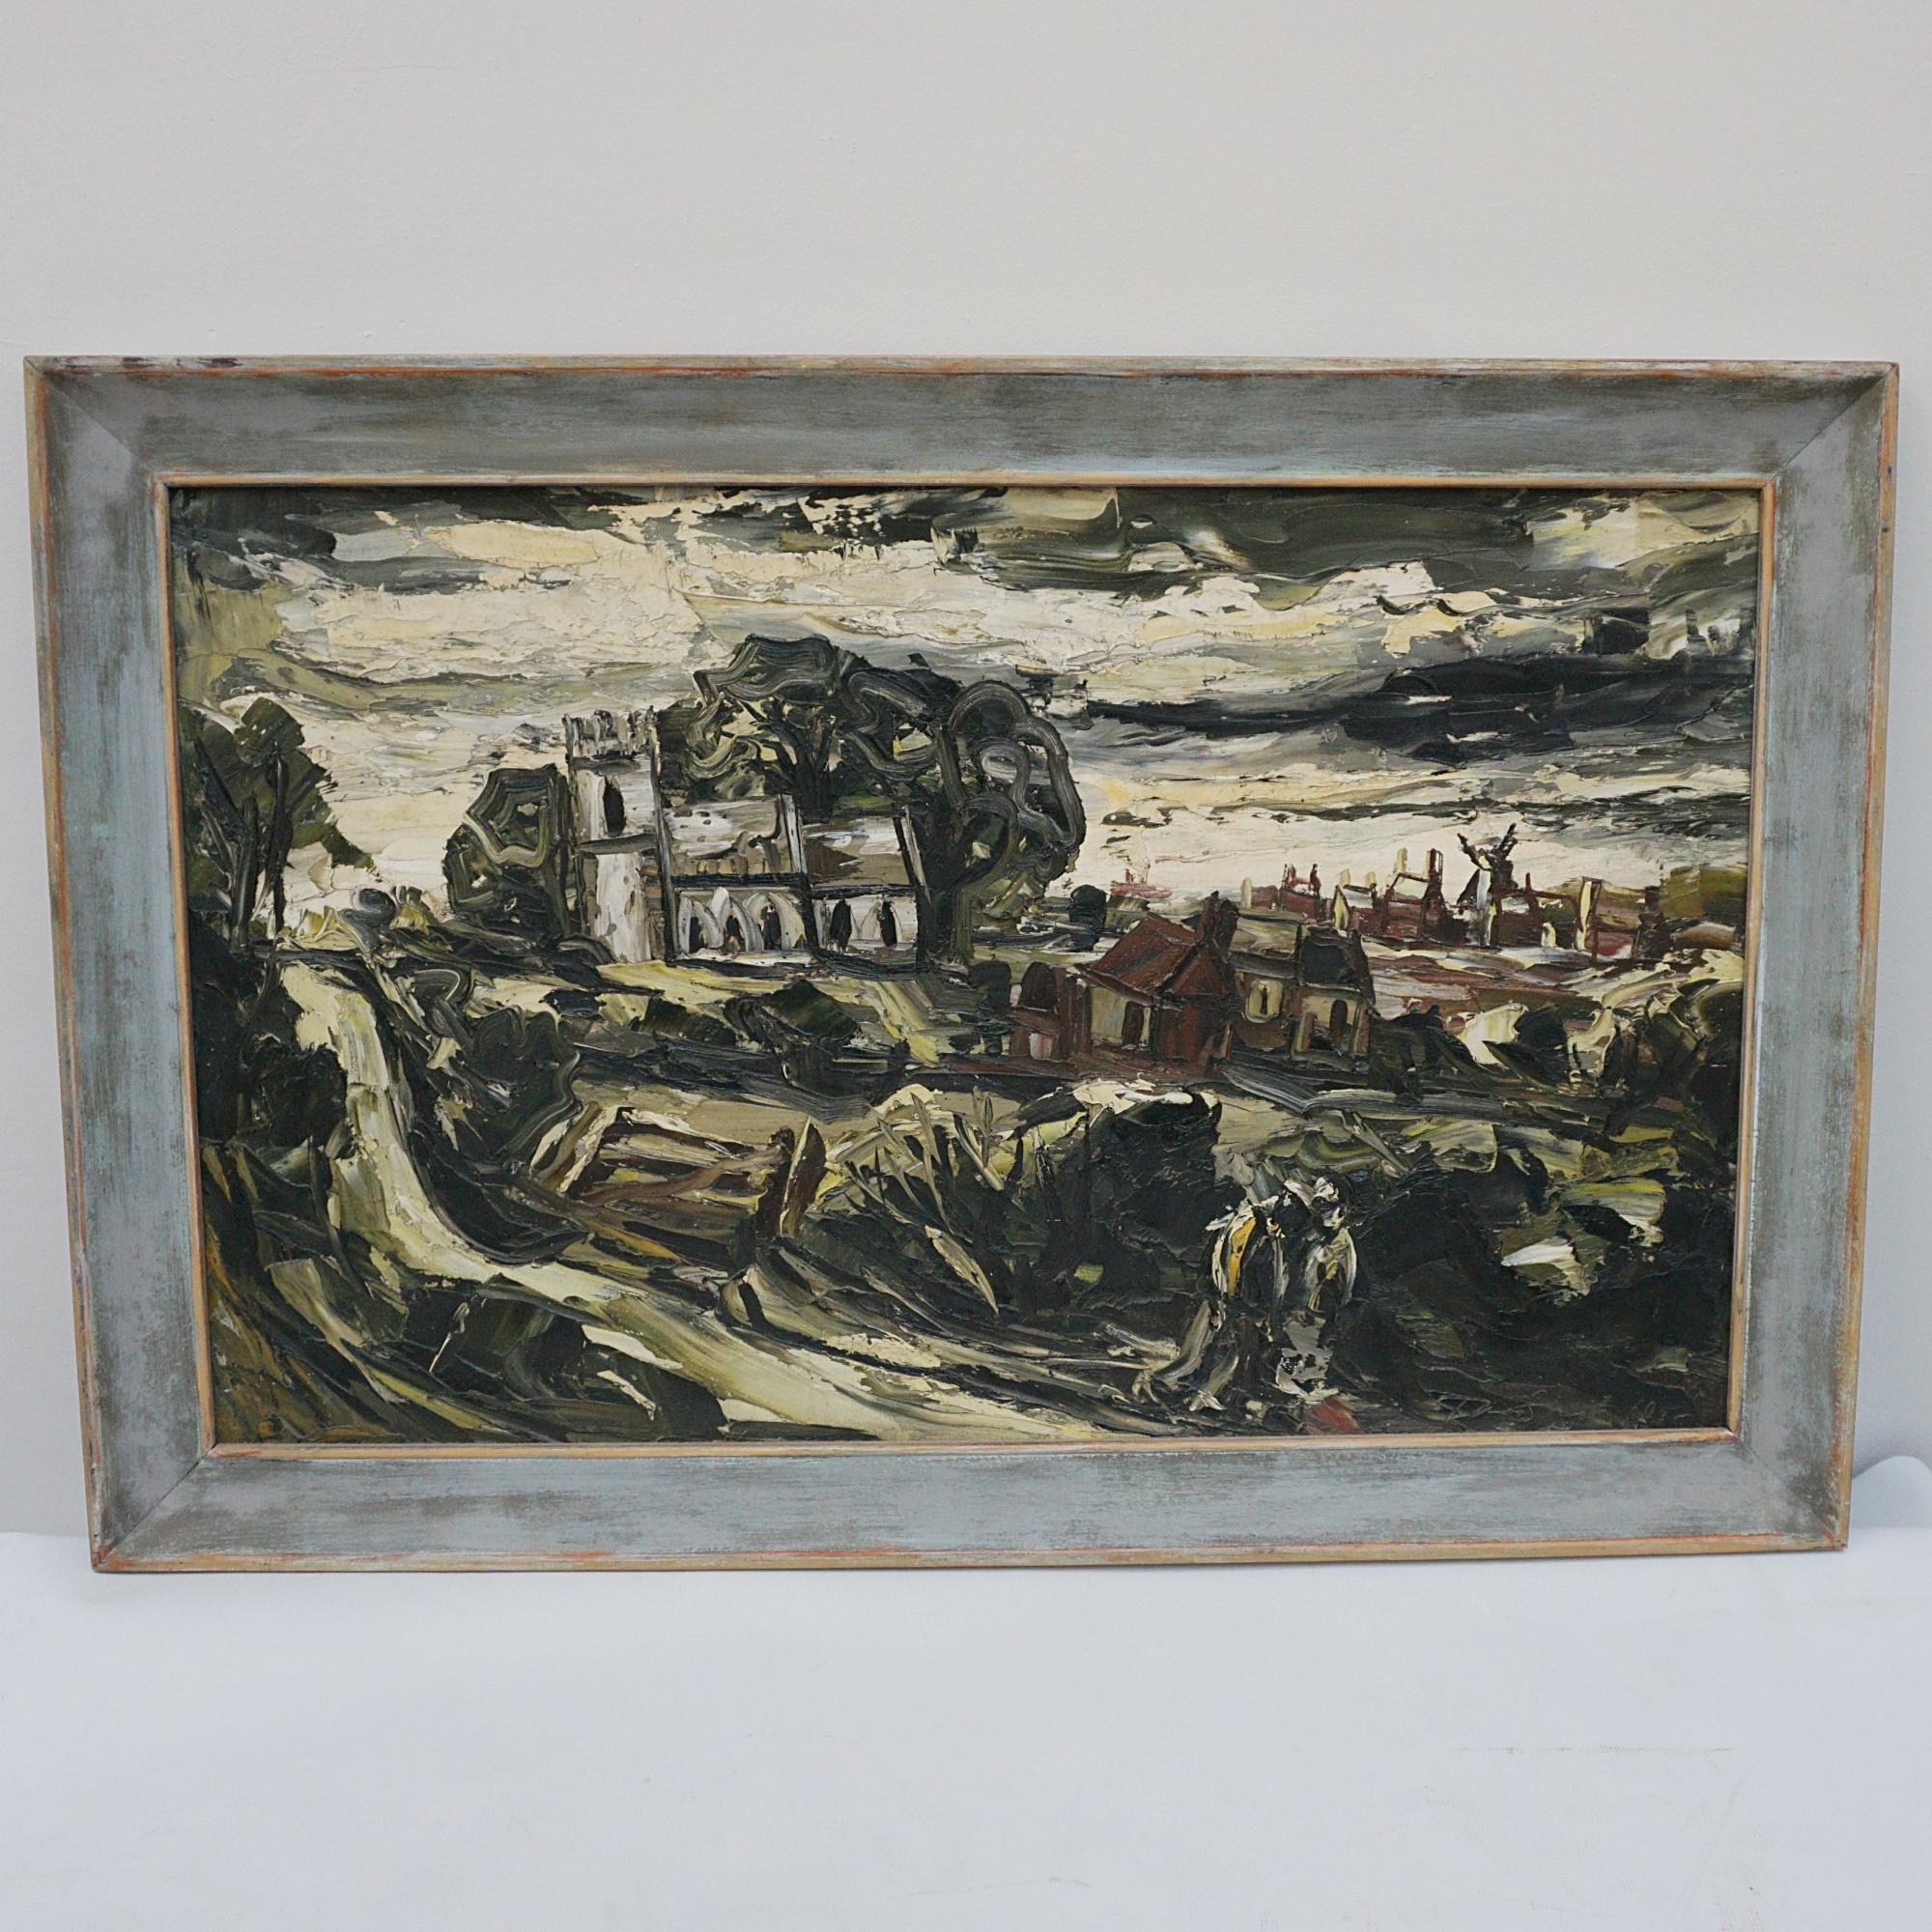 Peinture à l'huile sur panneau du milieu du 20e siècle représentant une scène de village de la campagne anglaise avec un château au premier plan, des maisons et un moulin à vent au loin. Signé en bas à gauche et daté 1936. Artiste